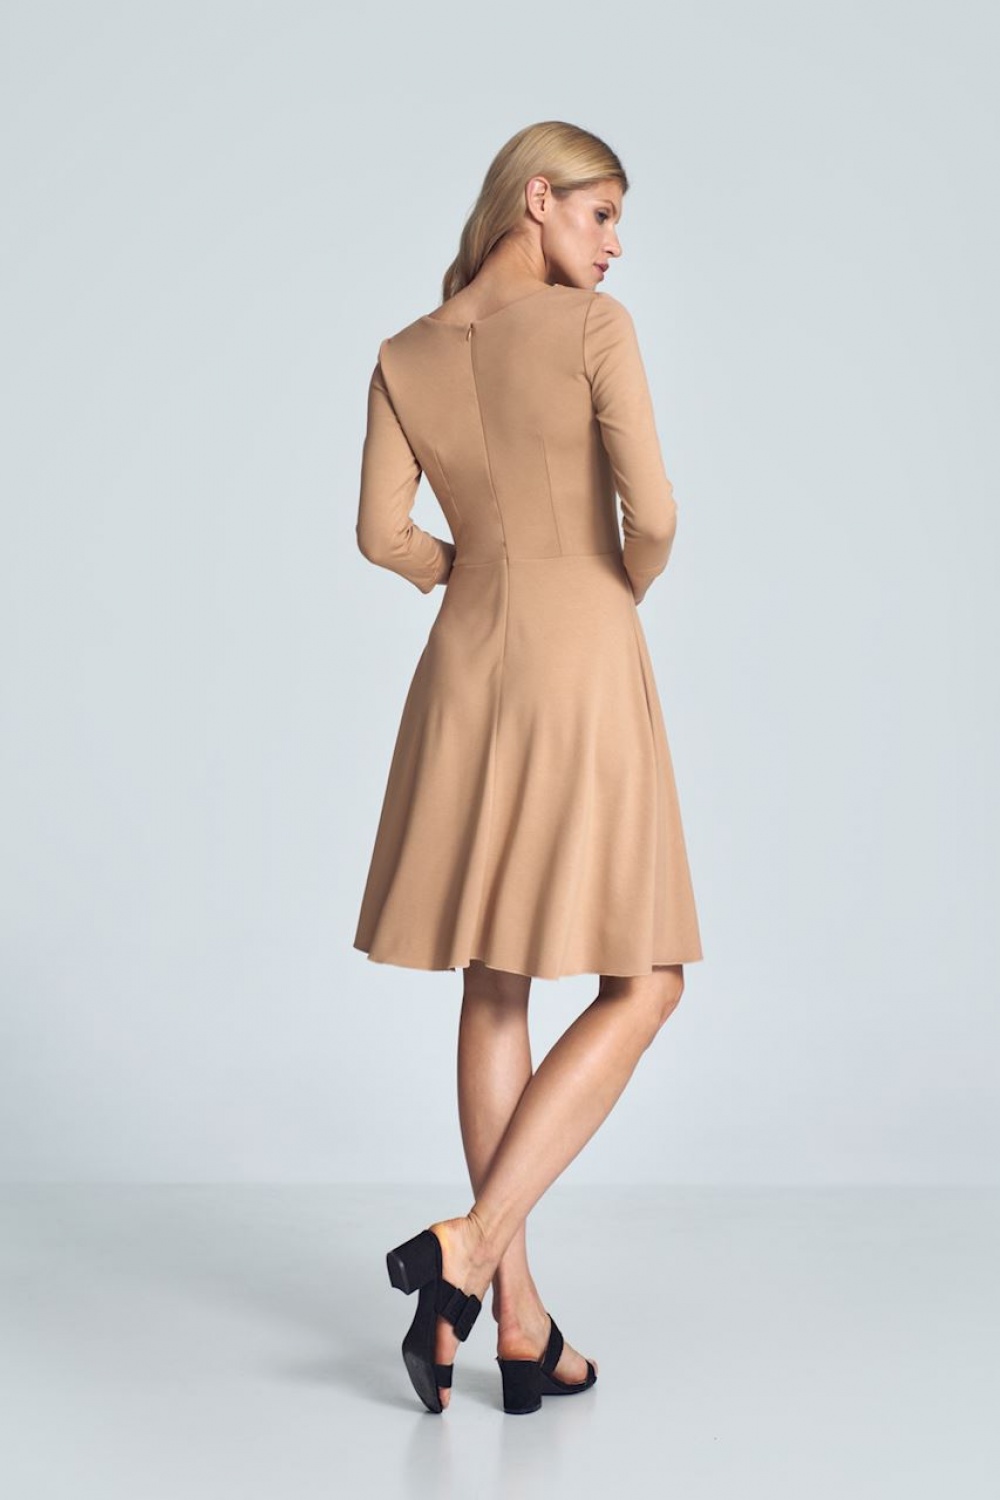 Sukienka Model M709 Beige - Figl Beżowy Damska